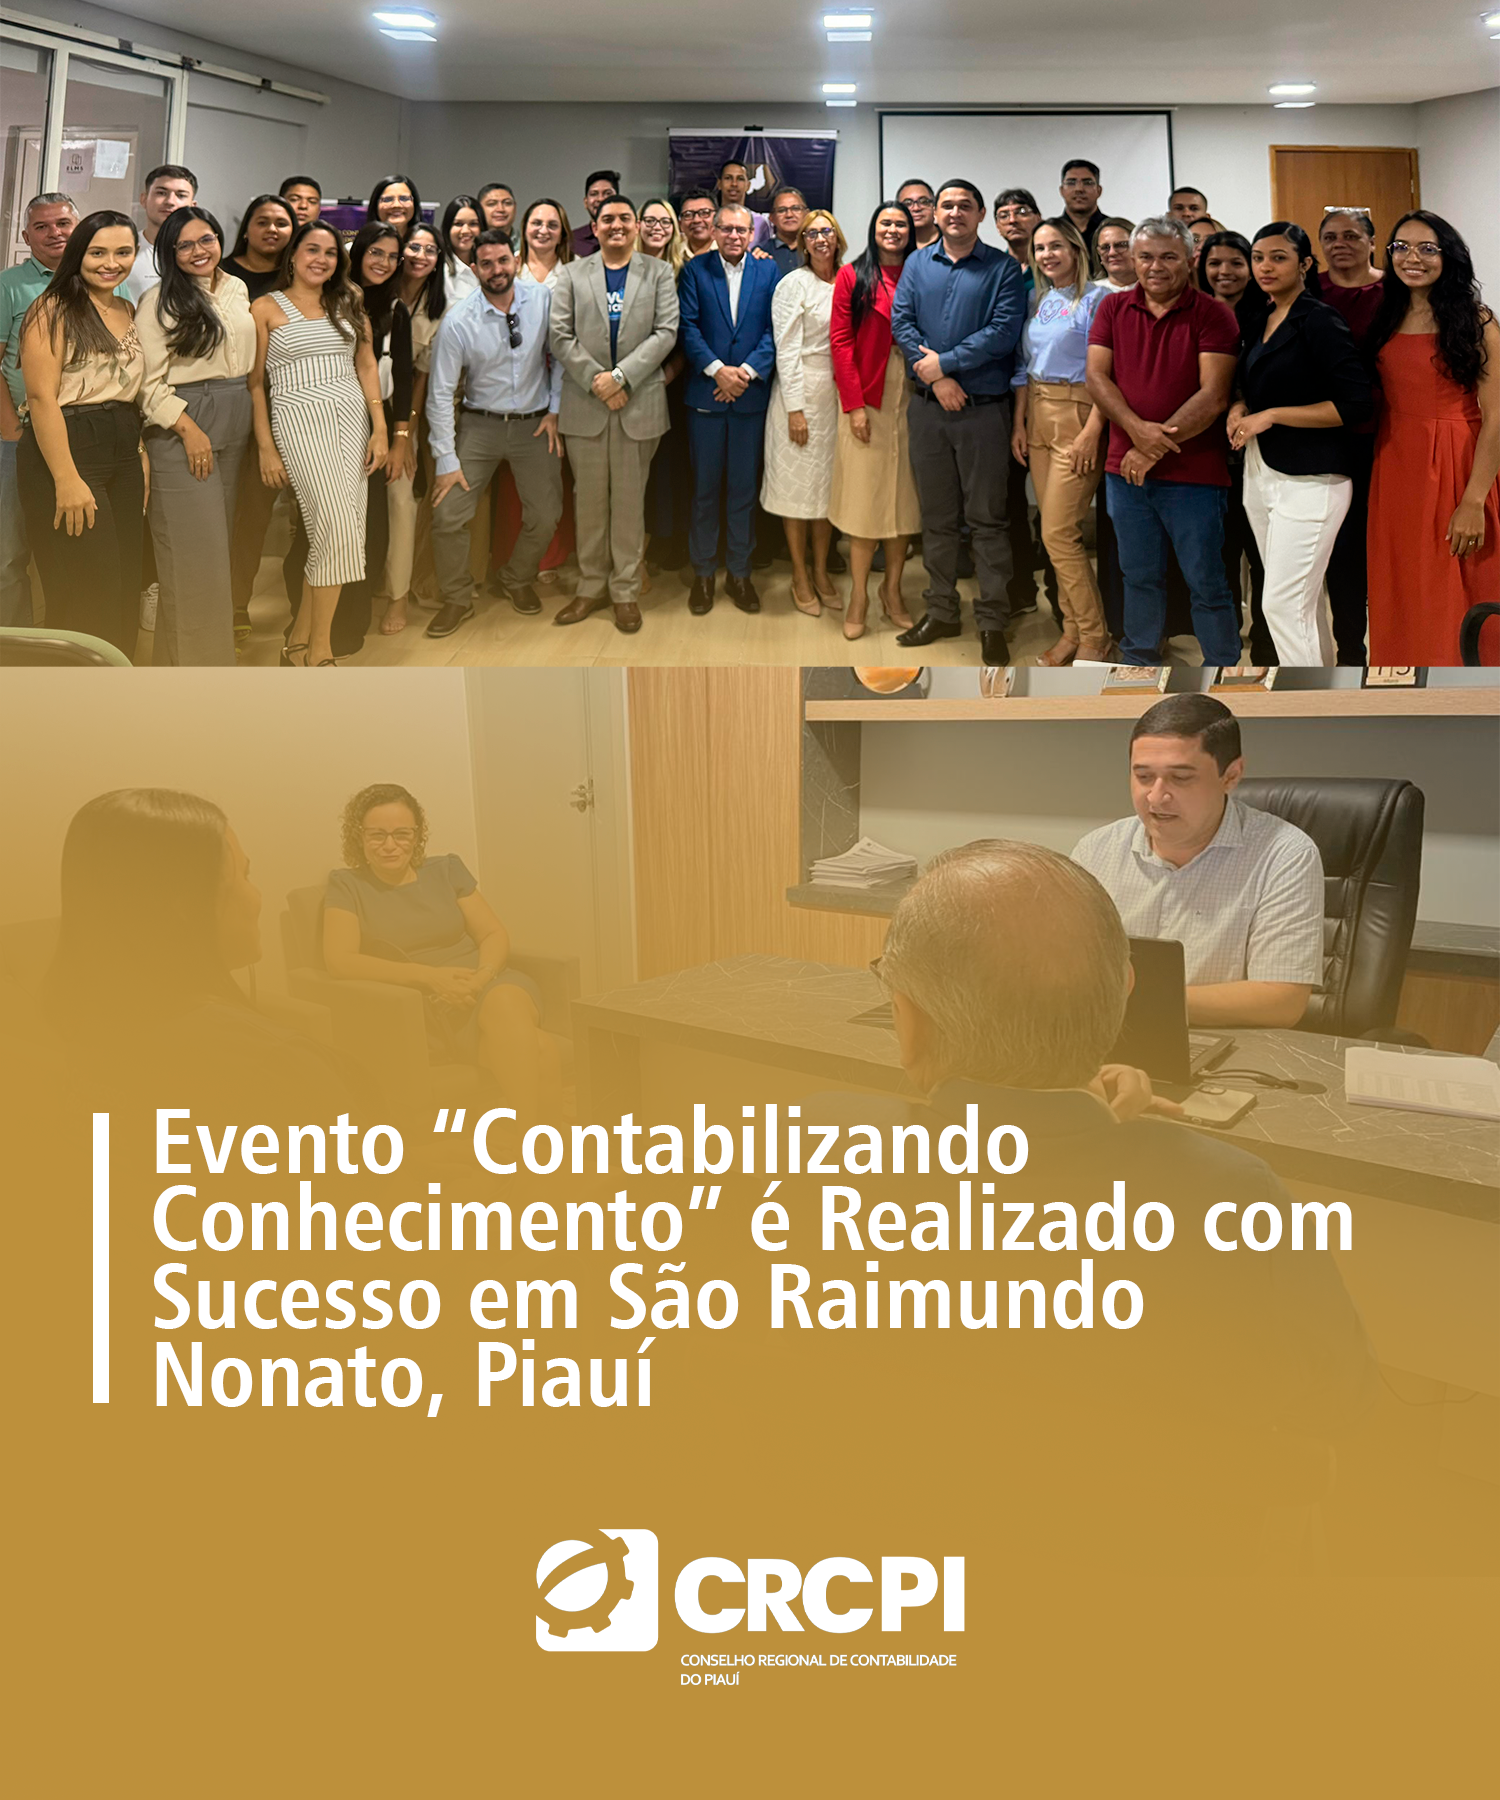 Evento “Contabilizando Conhecimento” é Realizado com Sucesso em São Raimundo Nonato, Piauí